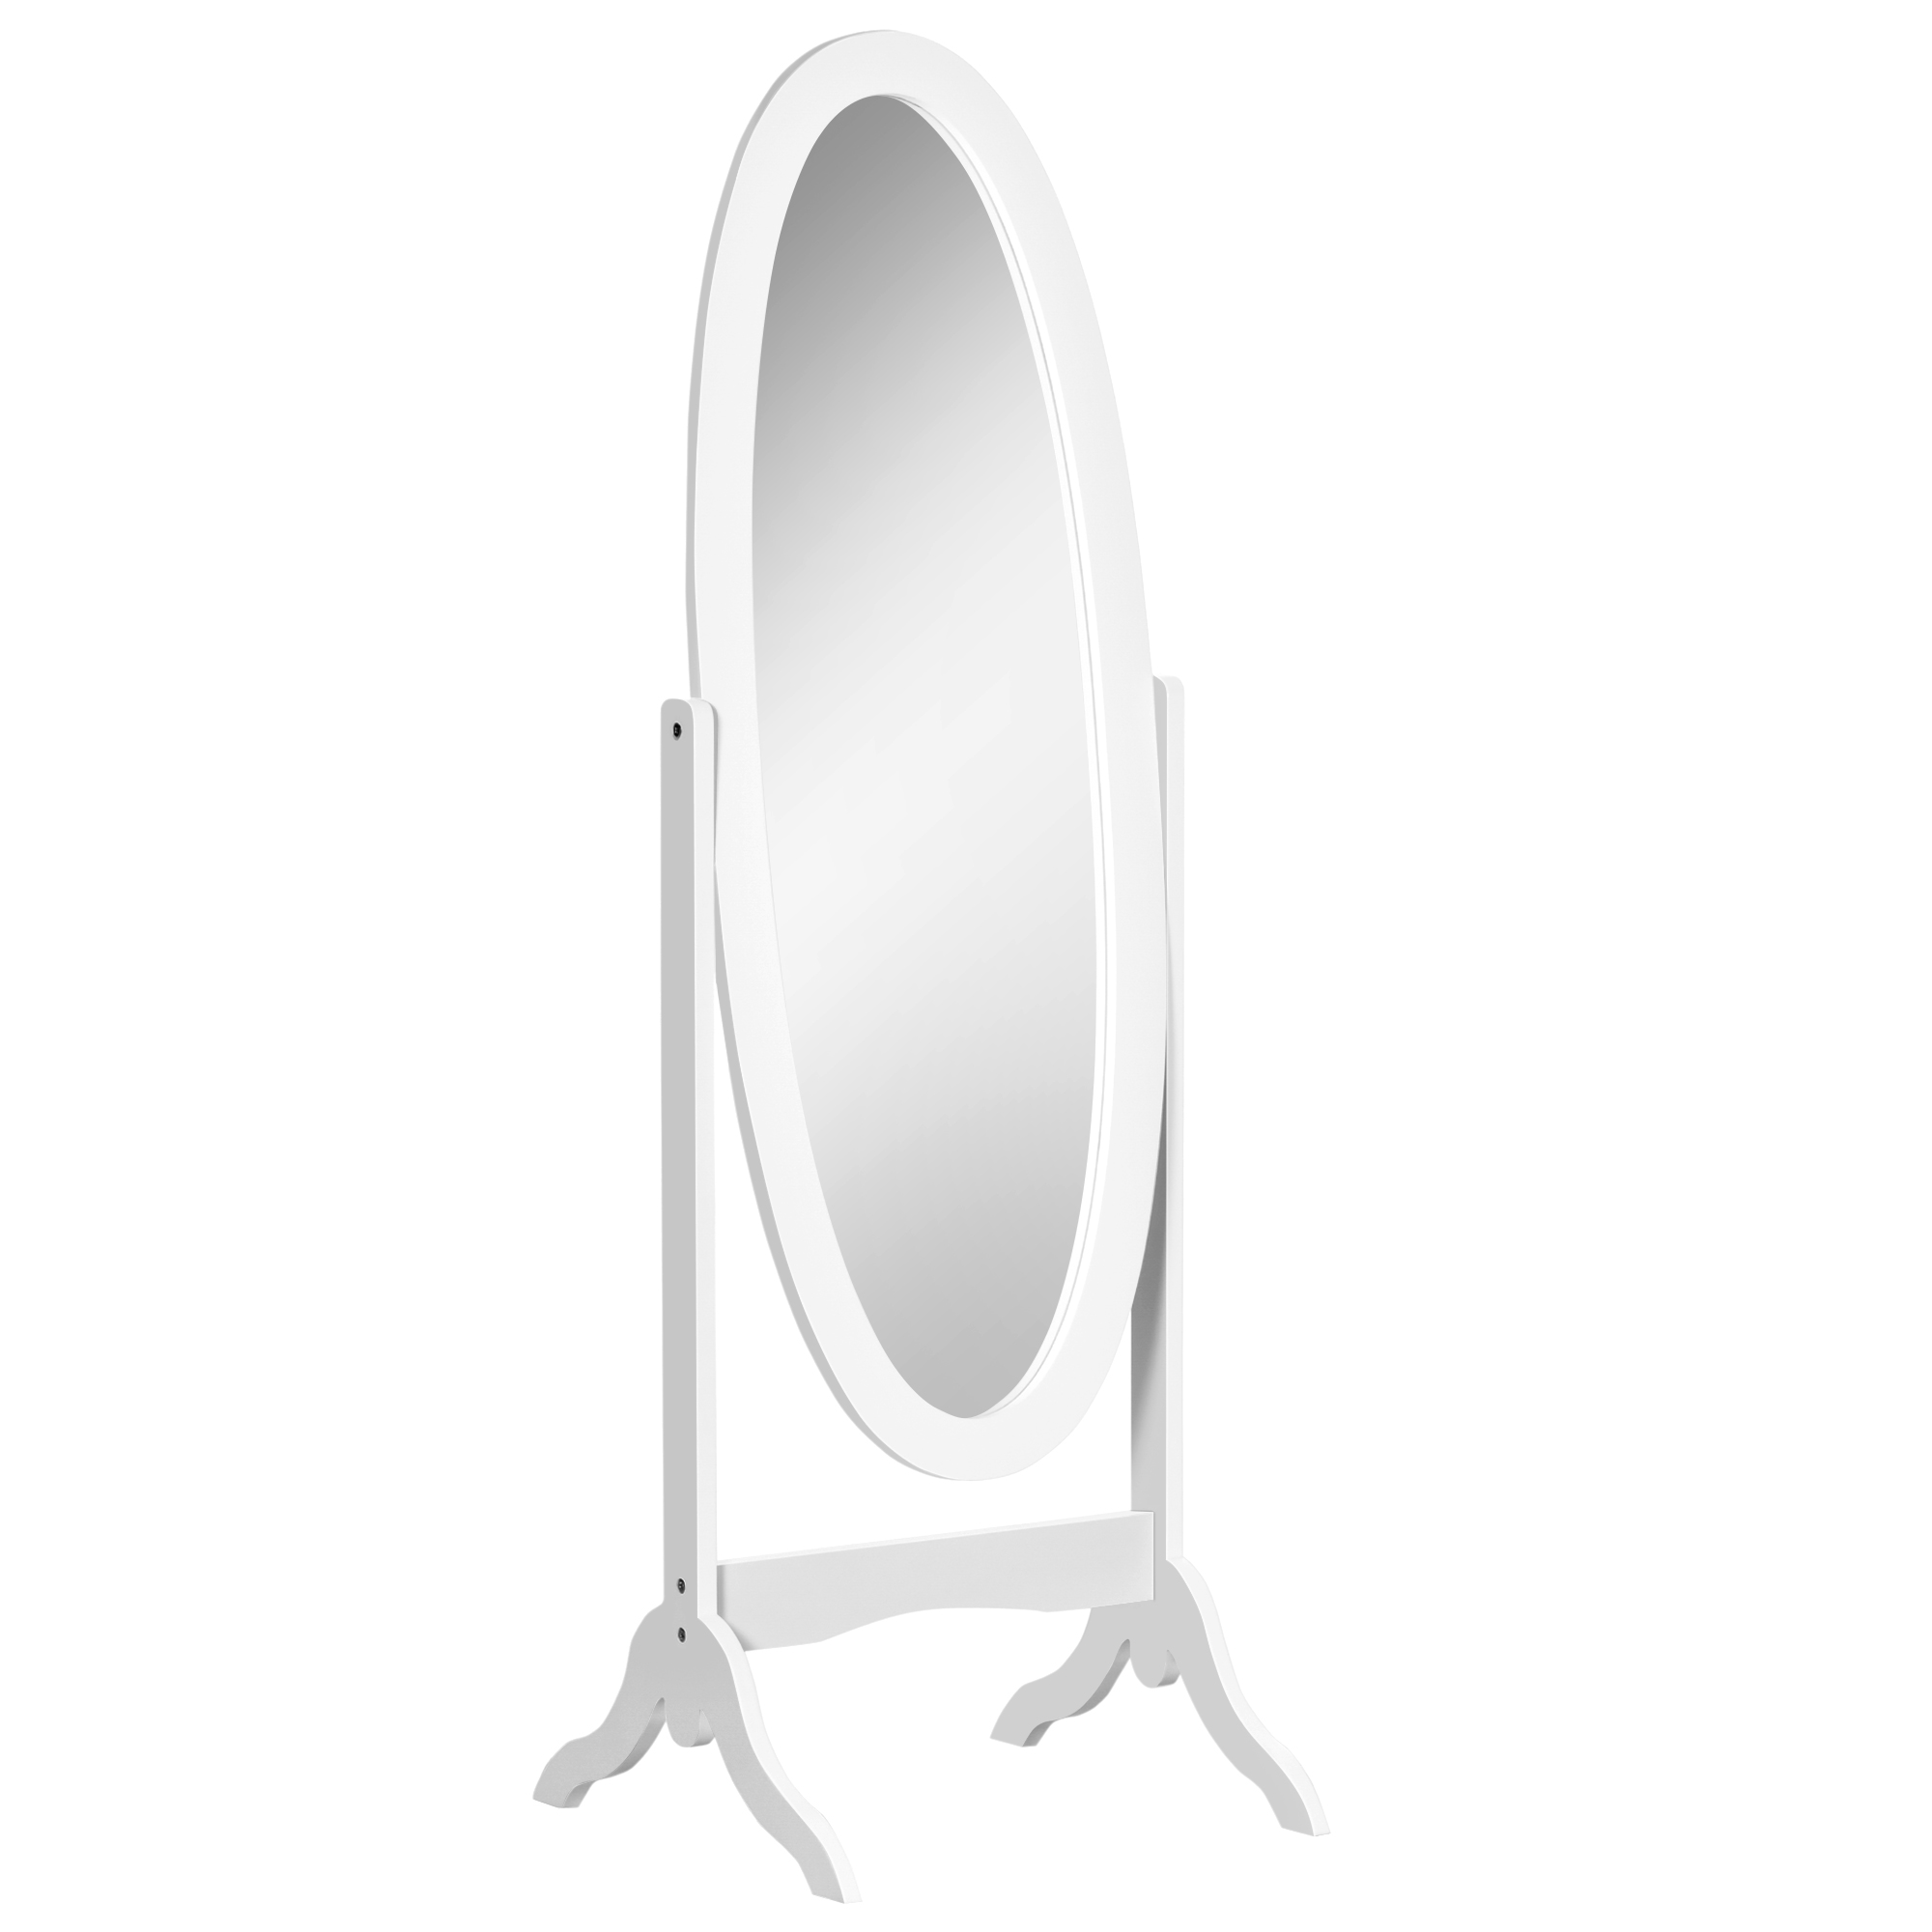 Miroir à pied inclinaison réglable - miroir enfant - design